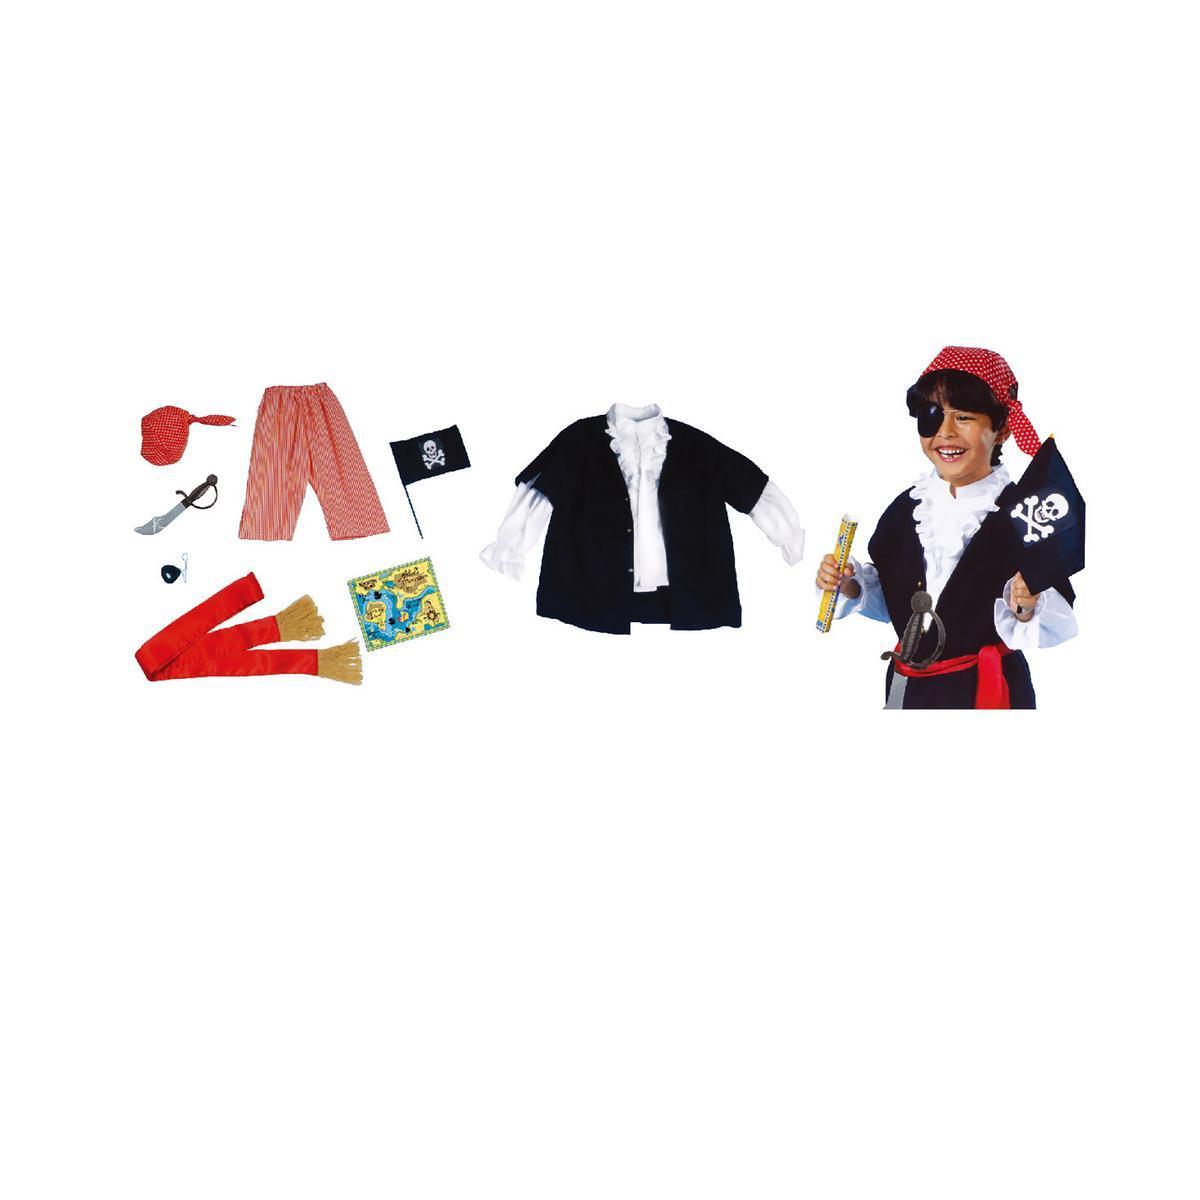 Déguisement de pirate + accessoires - Plastique et nylon - Taille unique - Noir, rouge et blanc